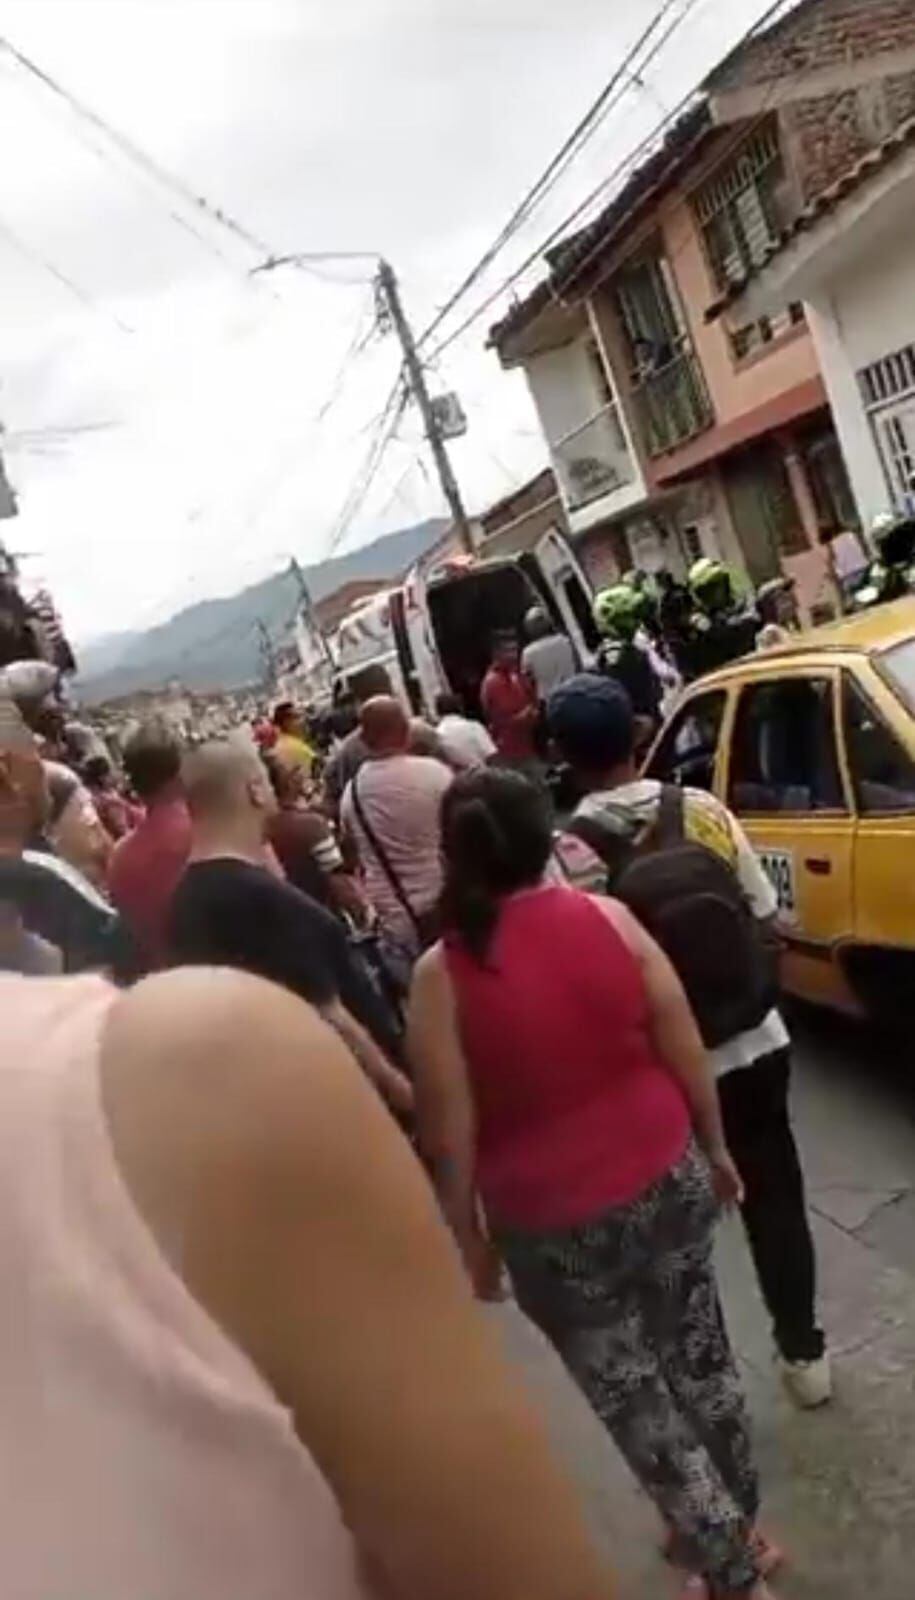 Los heridos fueron trasladados a centros asistenciales, según informó la Policía del Valle del Cauca.